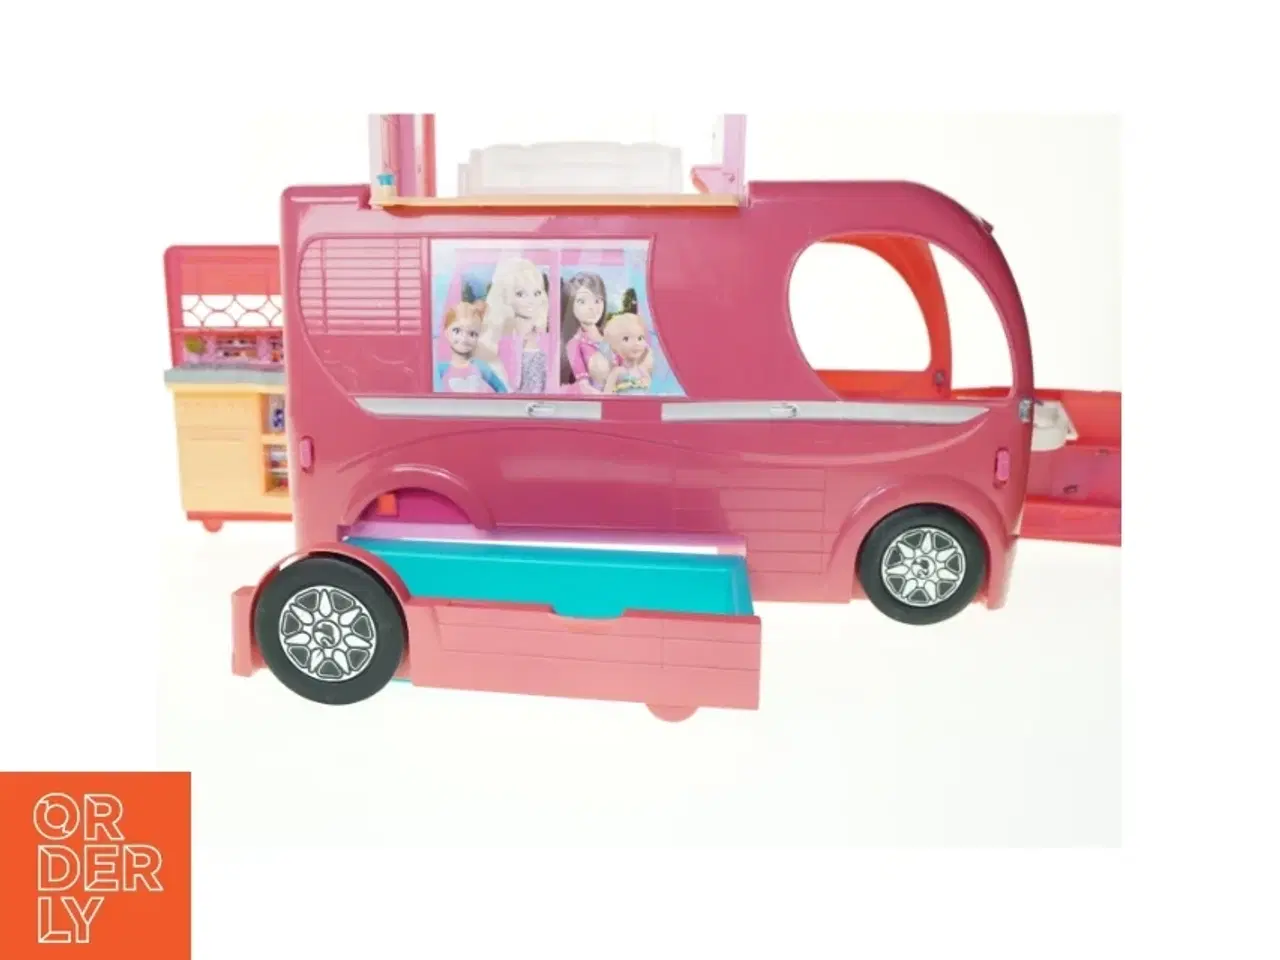 Billede 3 - Barbie autocamper fra Barbie (str. 53 x 22 x 35 cm)